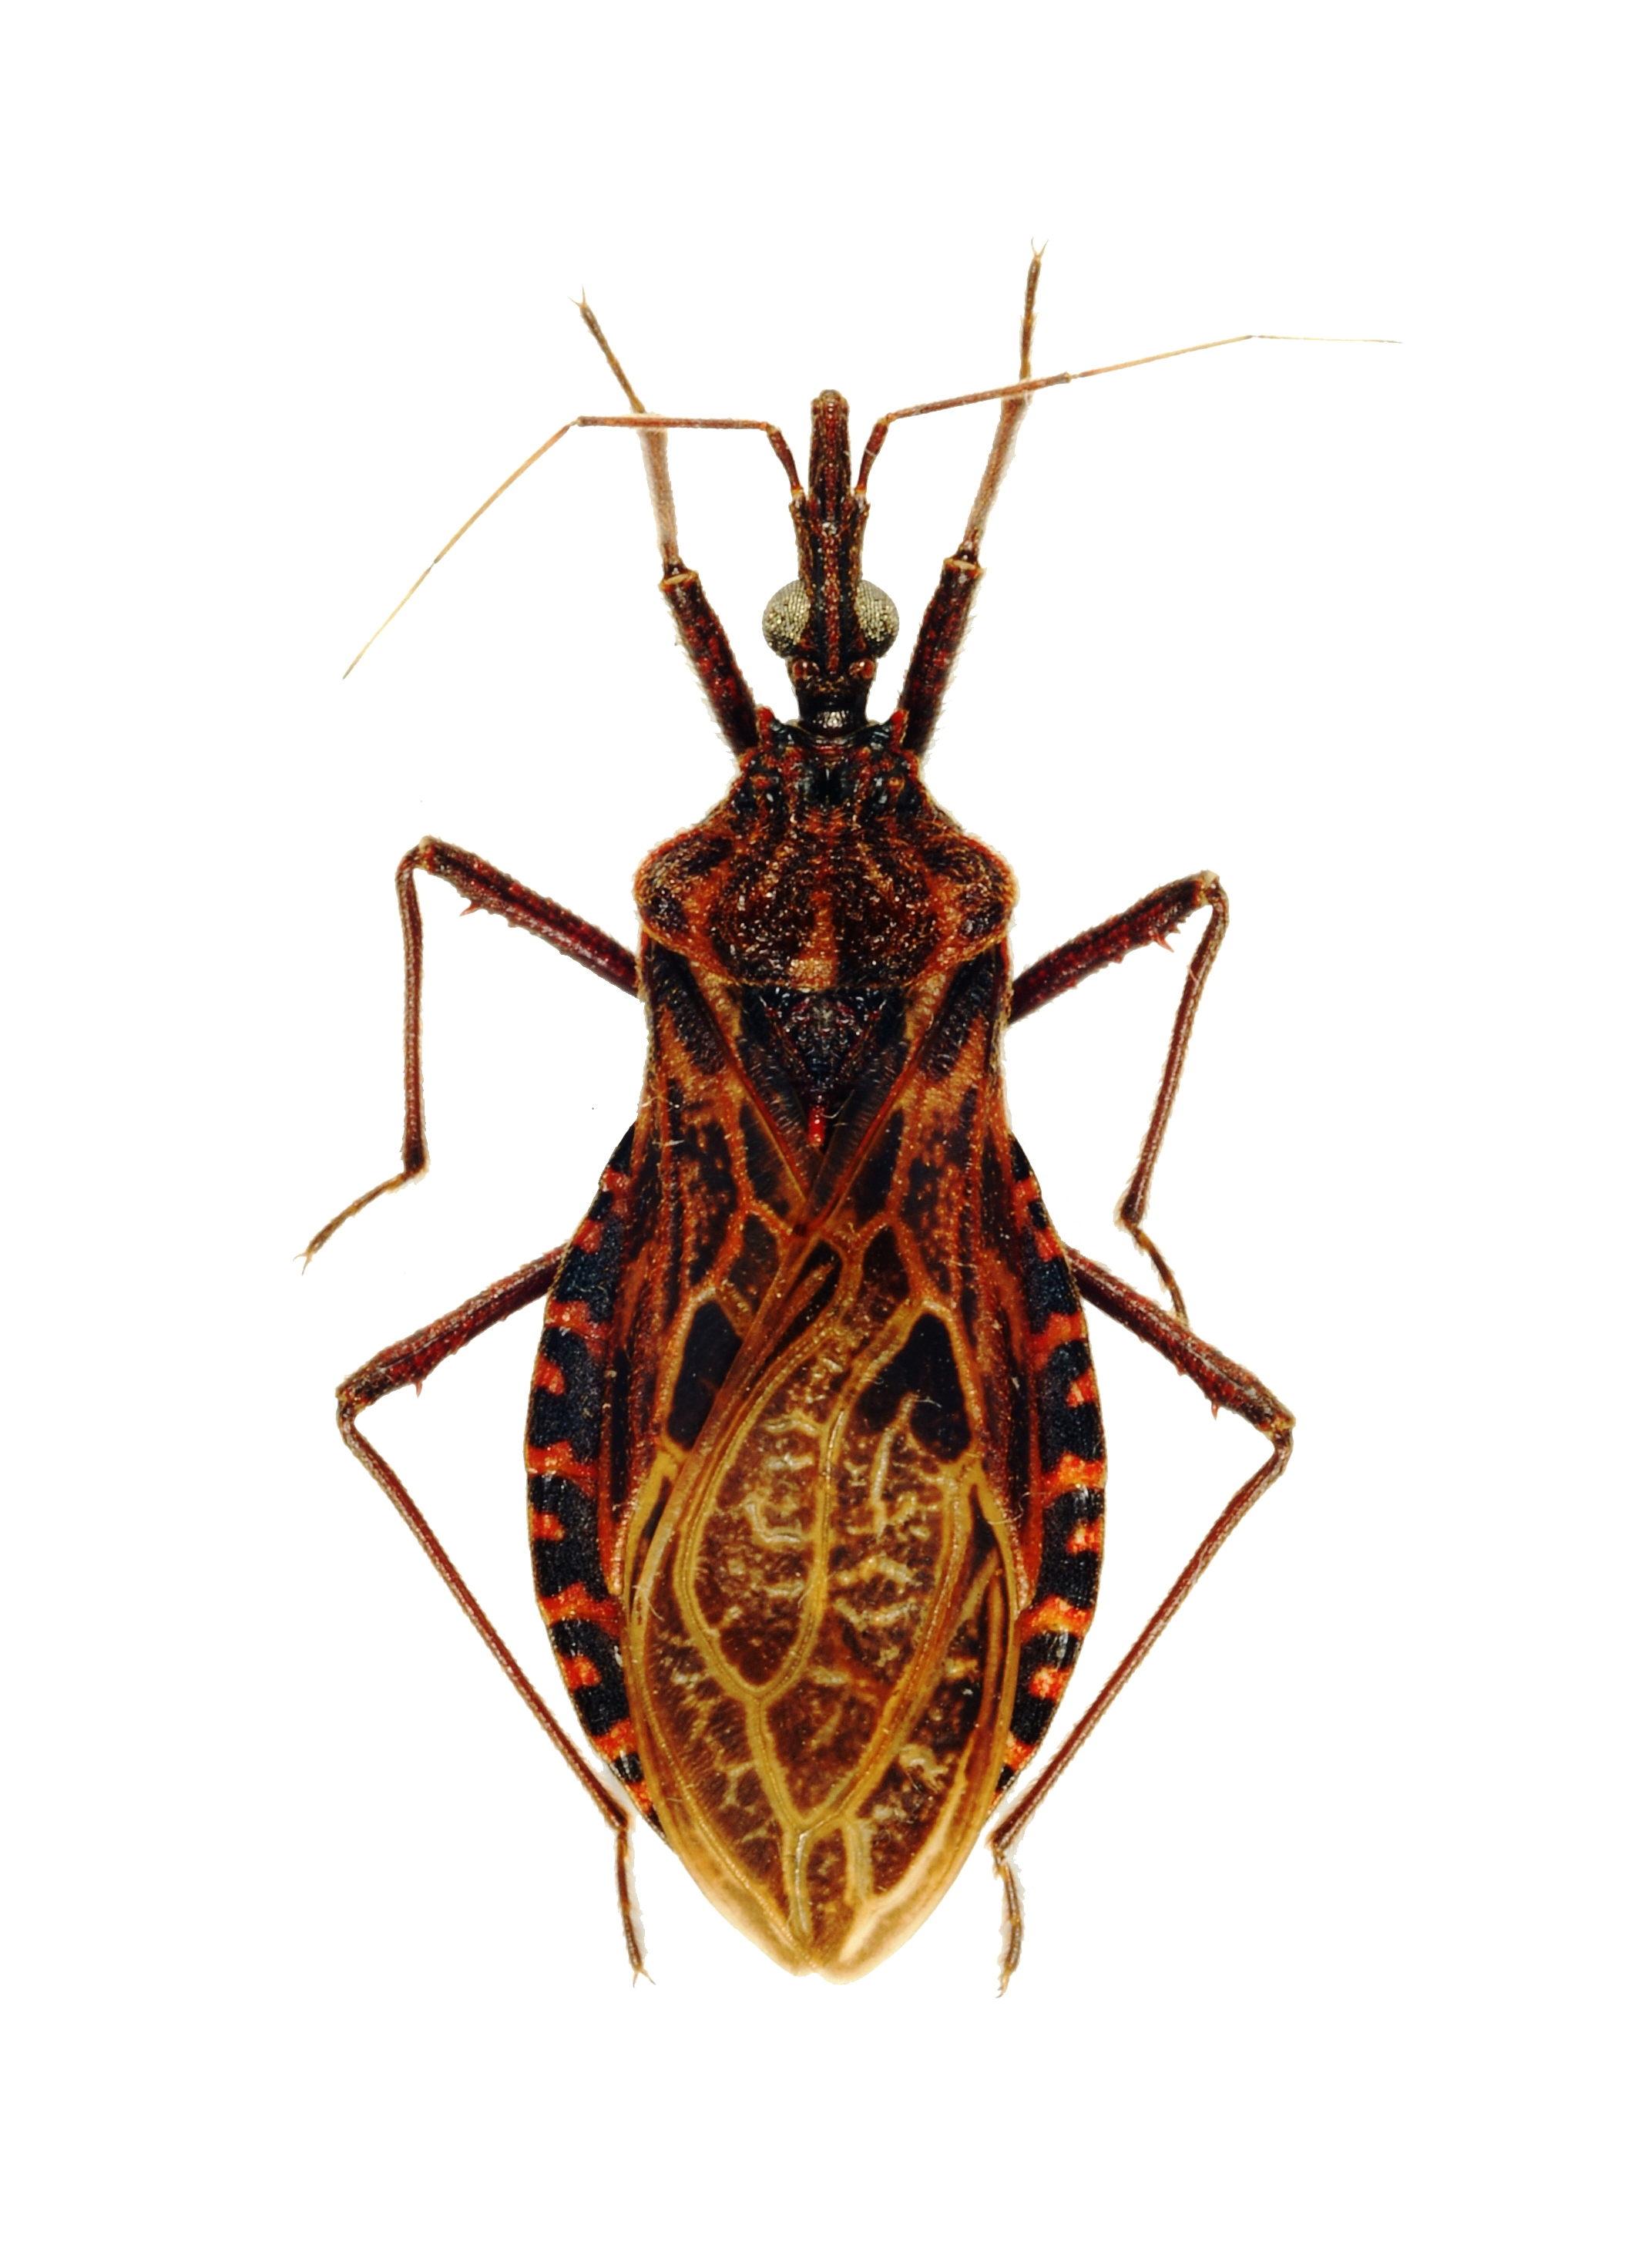 El Chinchorro y la enfermedad de Chagas (Reduviidae: Triatoma sp.)